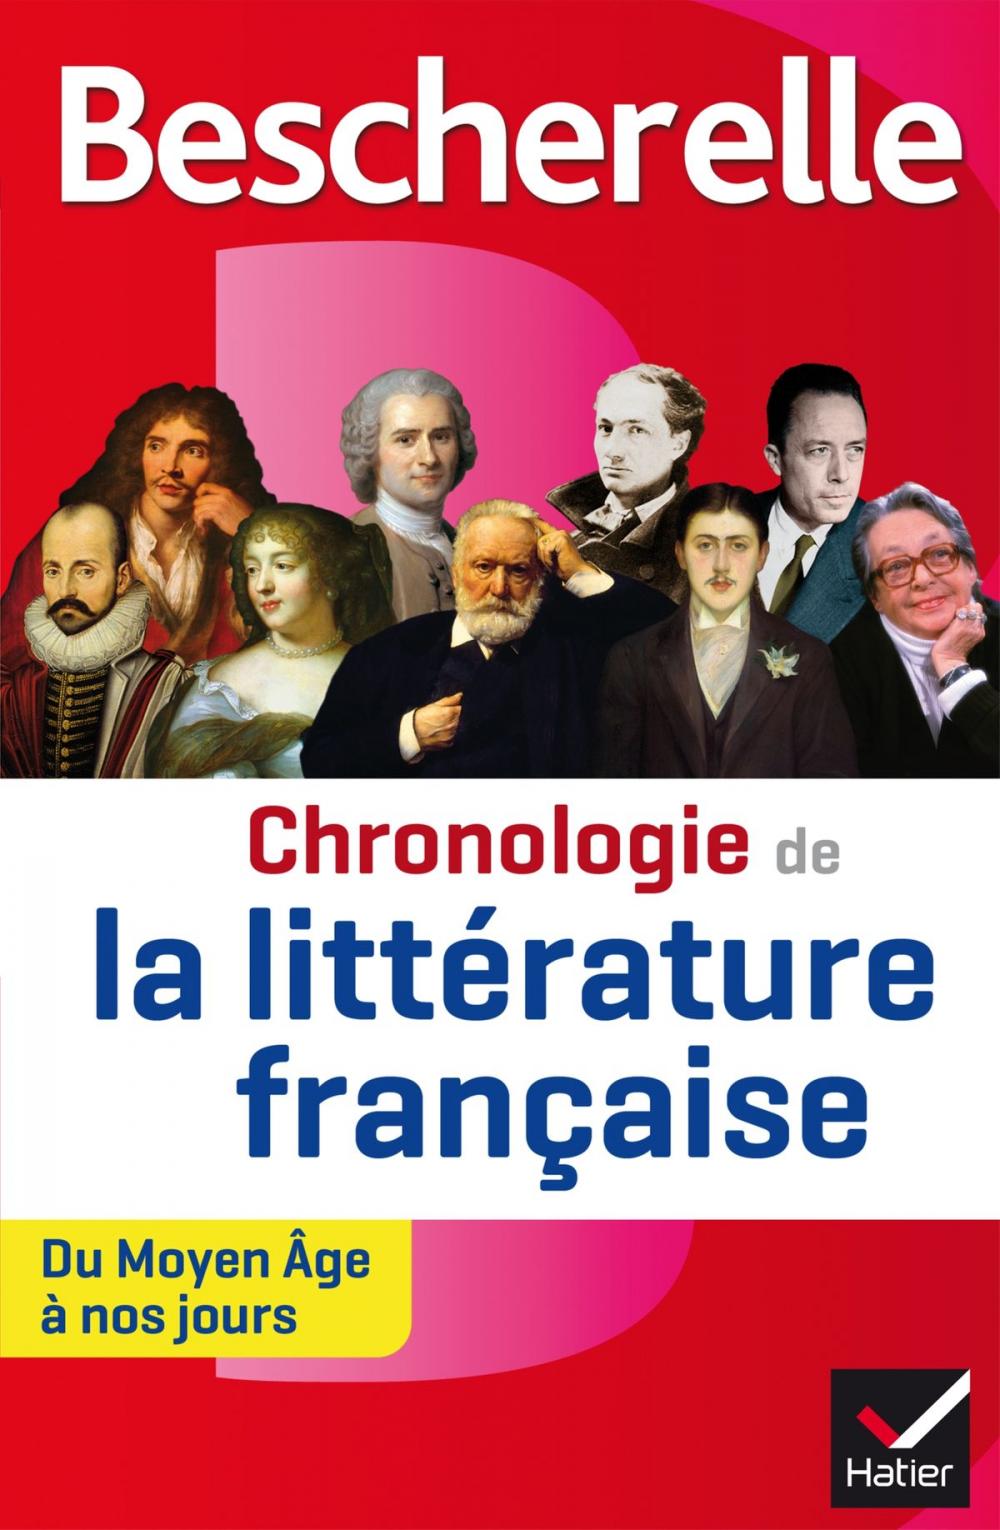 Big bigCover of Bescherelle Chronologie de la littérature française